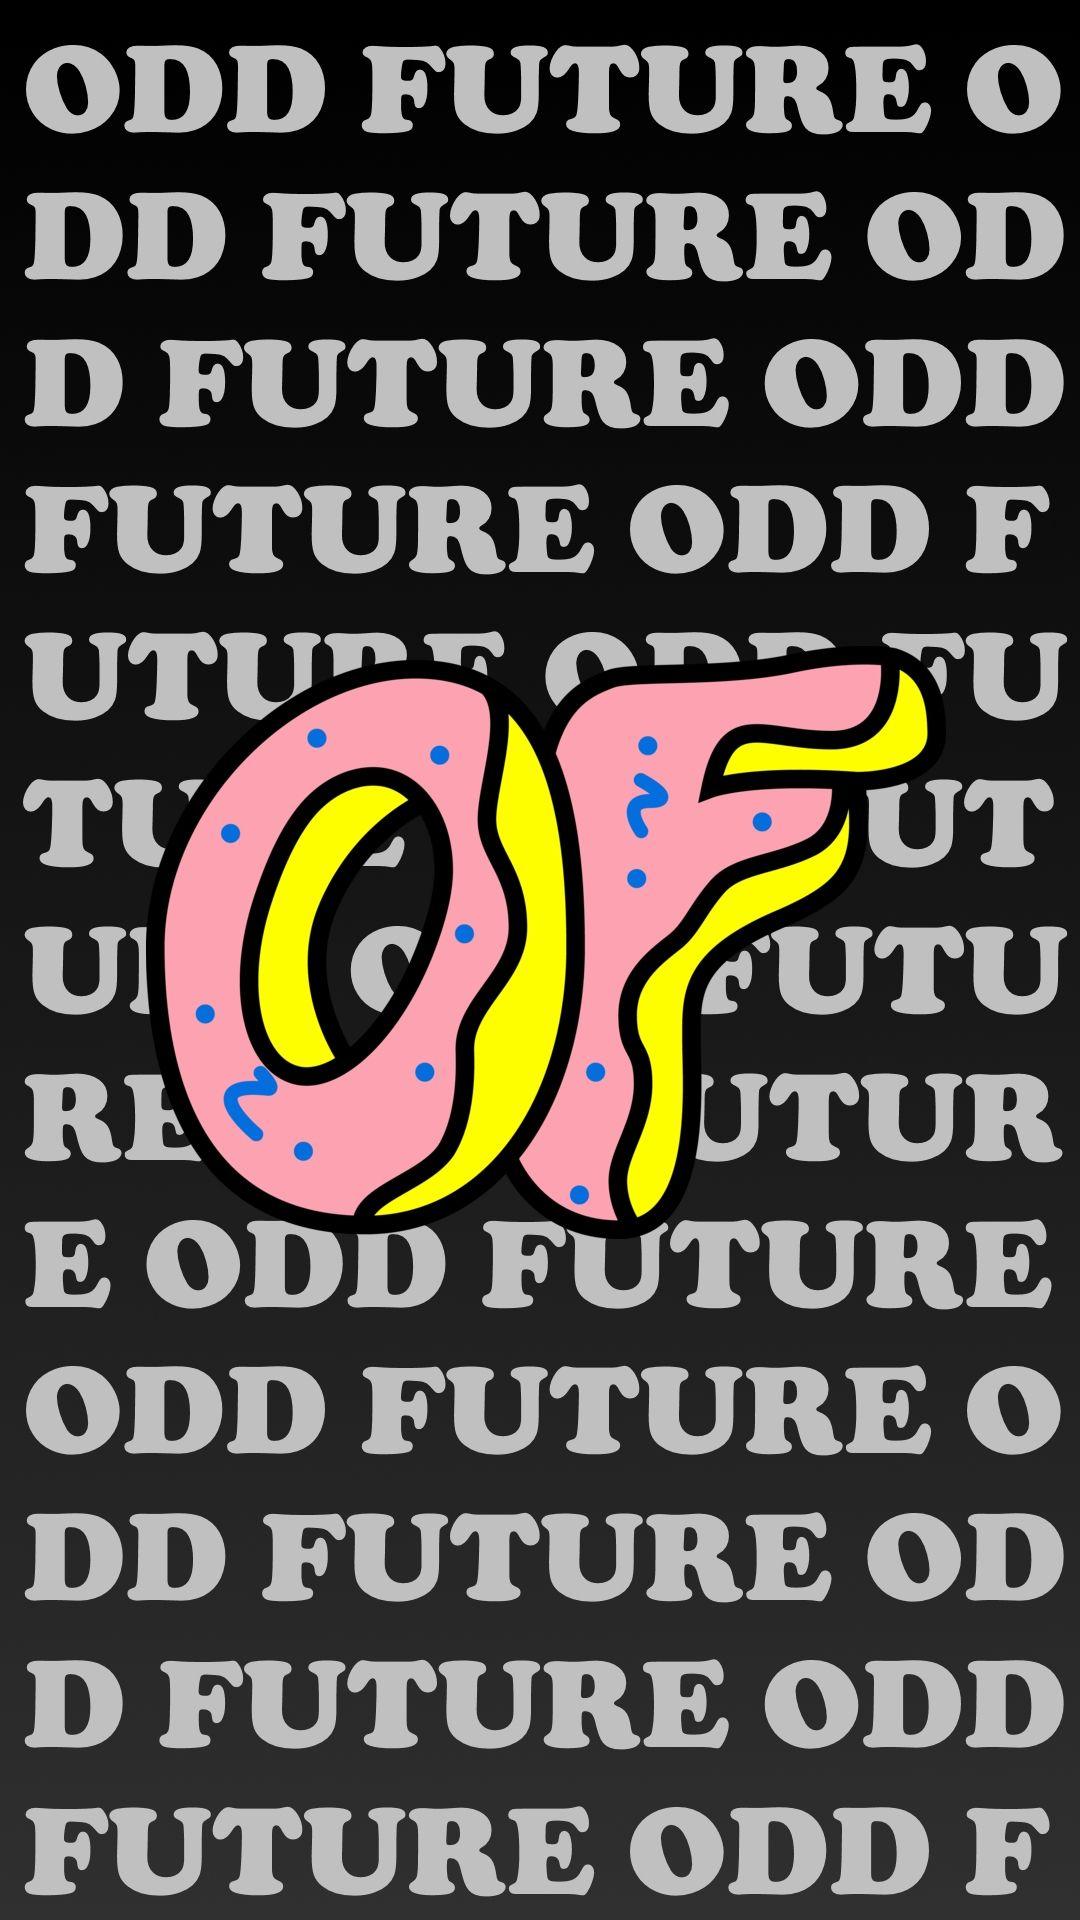 Cool HD Odd Future Logo - Odd Future Phone Wallpaper - inn.spb.ru - ghibli wallpapers